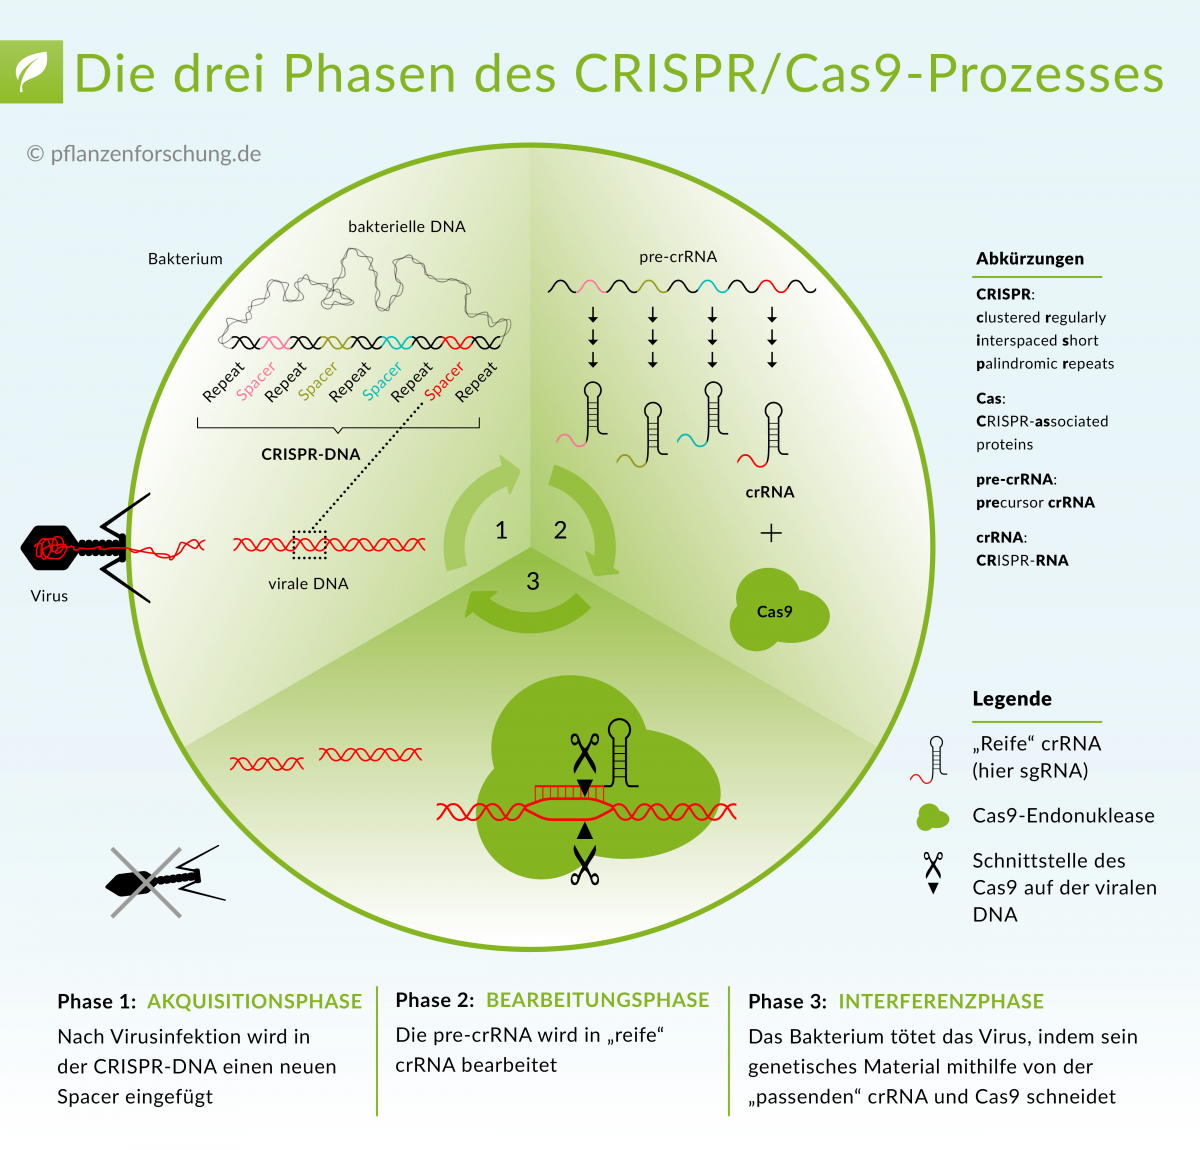 CRISPR/Cas-Systeme von Prokaryoten sind aus CRISPR-DNA und Cas-Proteinen zusammengesetzt und bilden eine adaptive Immunantwort gegen Viren.